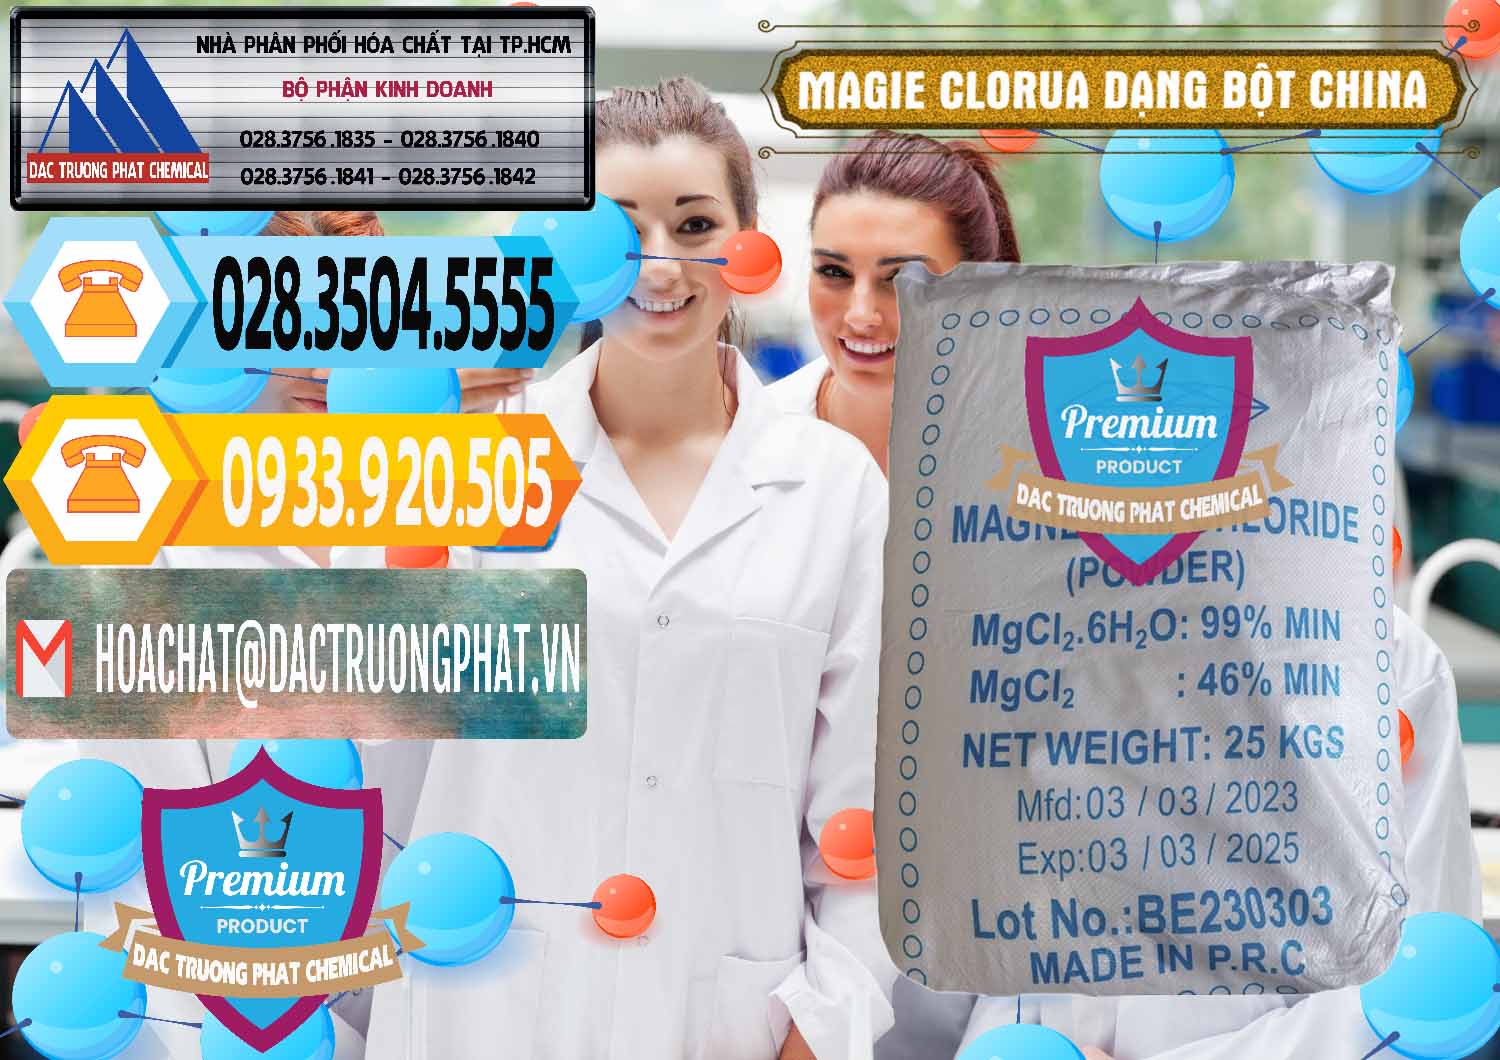 Nhà cung ứng và bán Magie Clorua – MGCL2 96% Dạng Bột Logo Kim Cương Trung Quốc China - 0387 - Cty bán - phân phối hóa chất tại TP.HCM - hoachattayrua.net